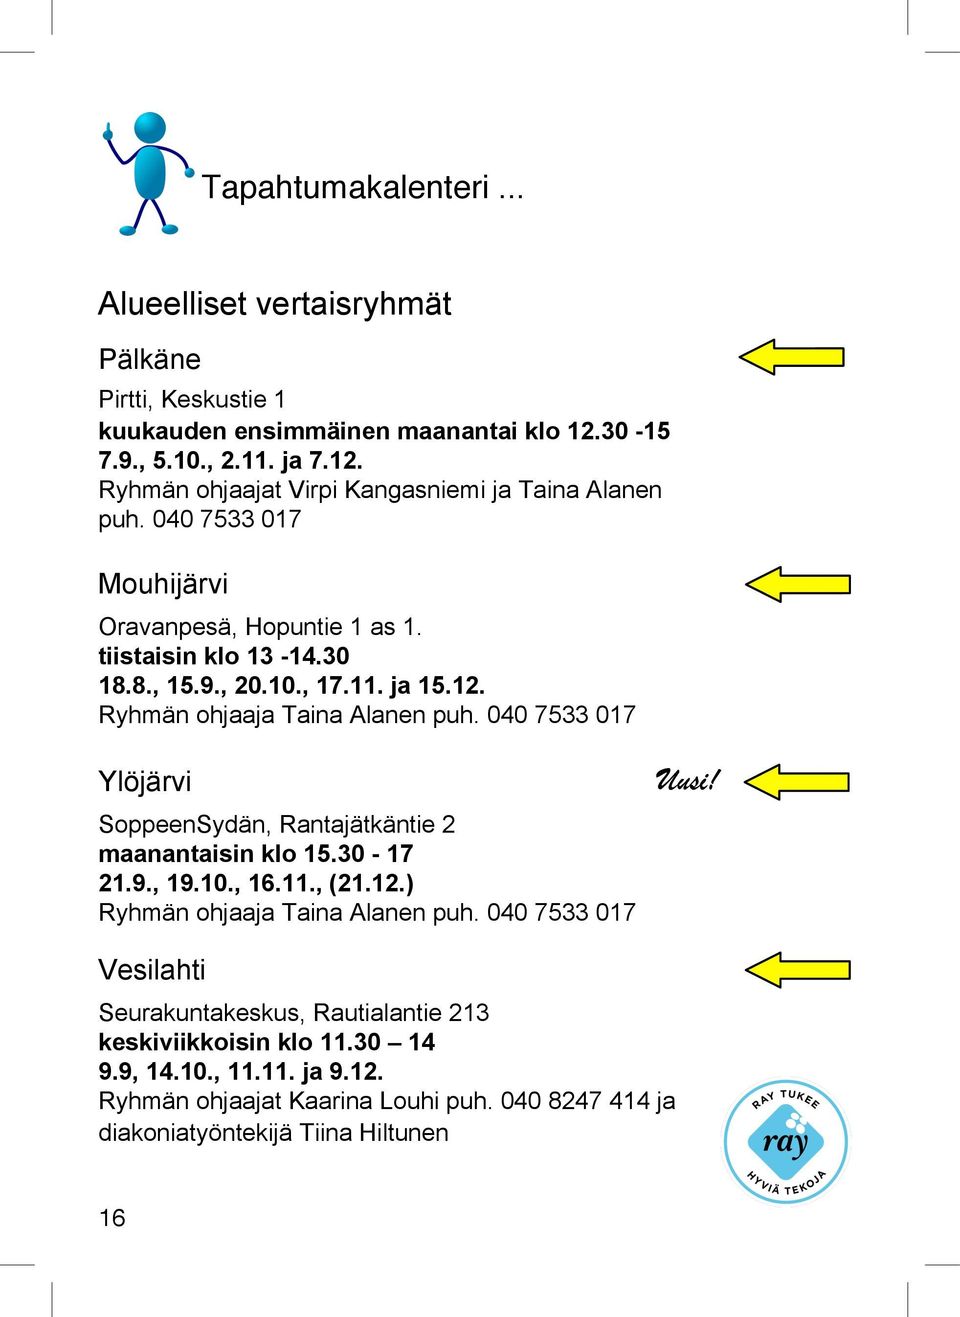 040 7533 017 Ylöjärvi SoppeenSydän, Rantajätkäntie 2 maanantaisin klo 15.30-17 21.9., 19.10., 16.11., (21.12.) Ryhmän ohjaaja Taina Alanen puh. 040 7533 017 Uusi!